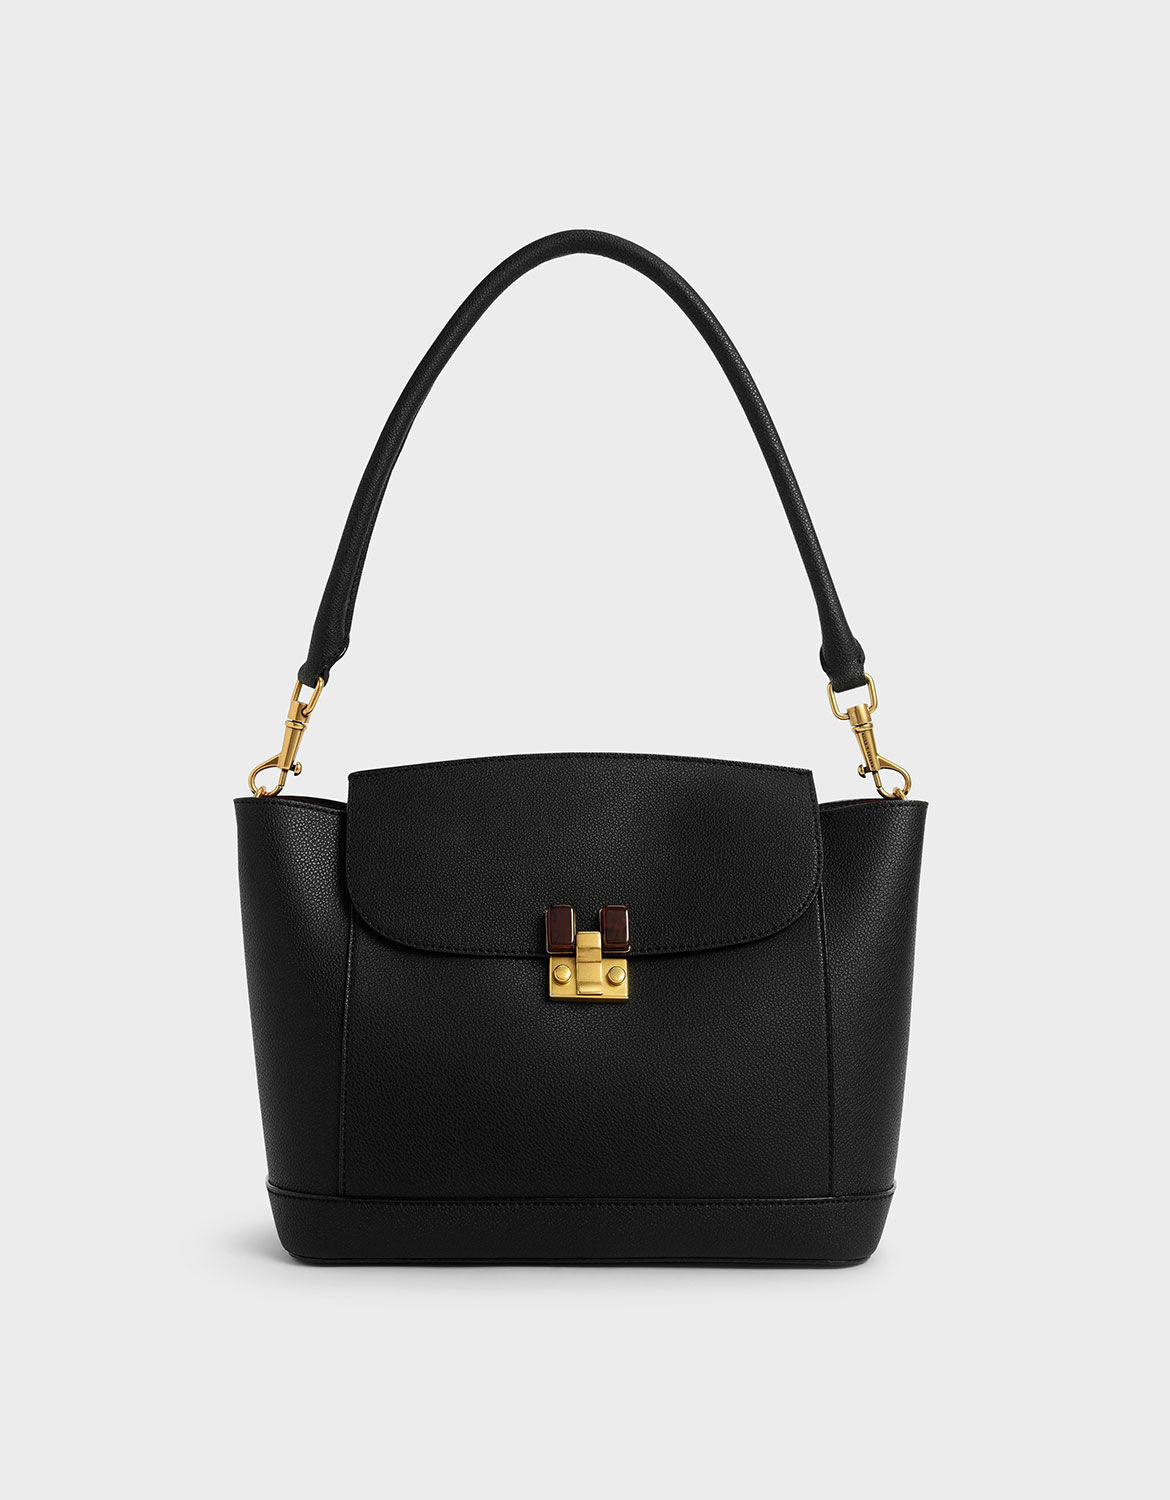 black embellished bag